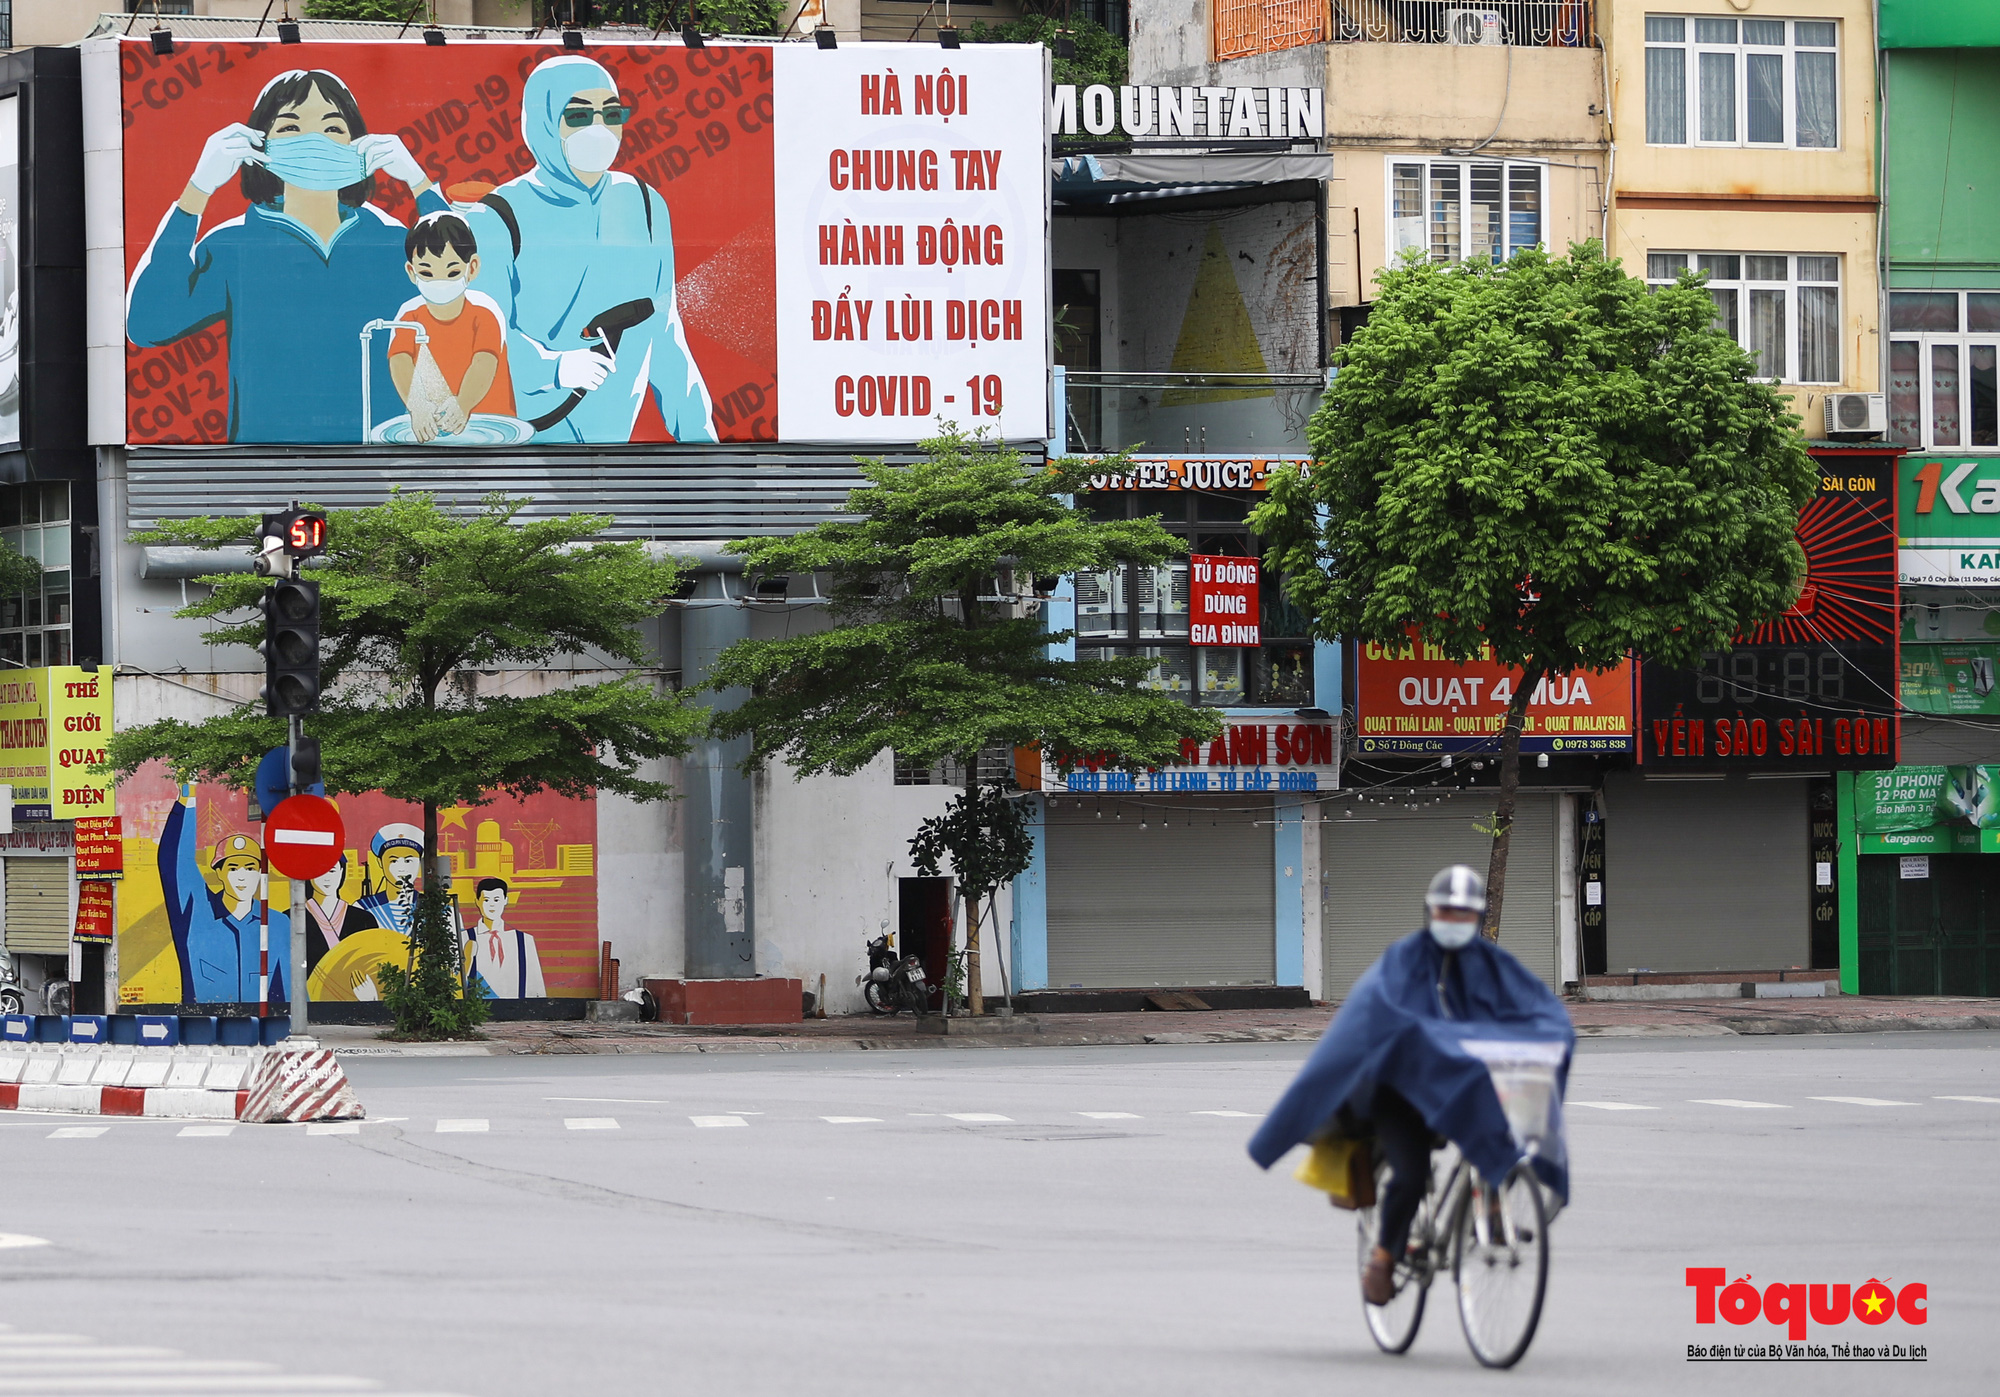 Pano, hình ảnh cổ động phòng chống dịch COVID-19 trên khắp đường phố Hà Nội - Ảnh 1.